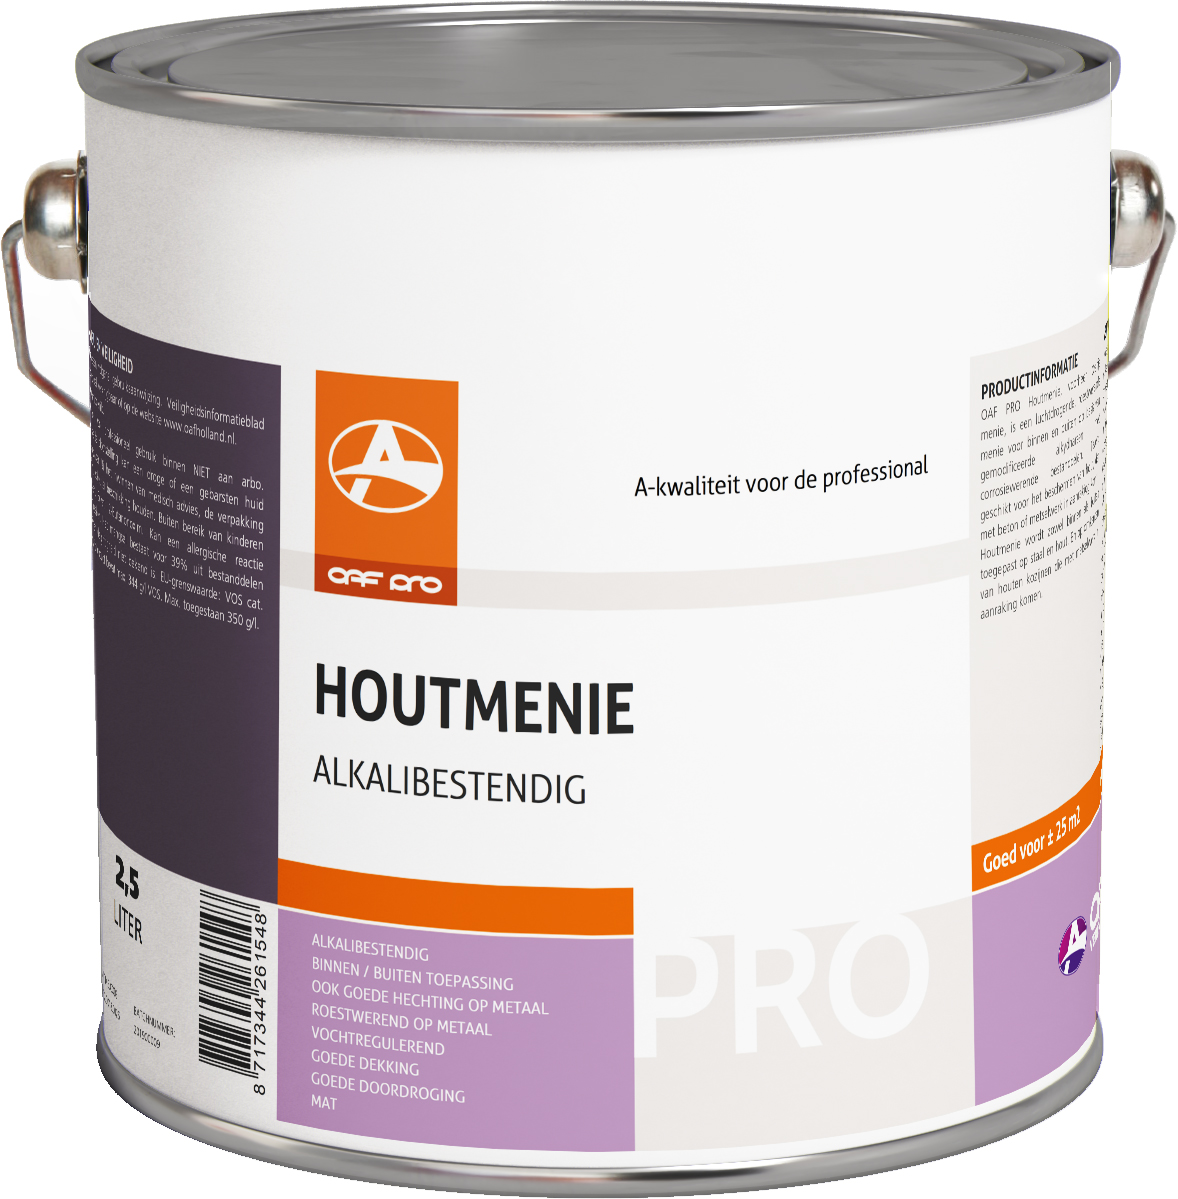 OAF PRO Houtmenie (OAF Oranjemenie) 2,5 liter